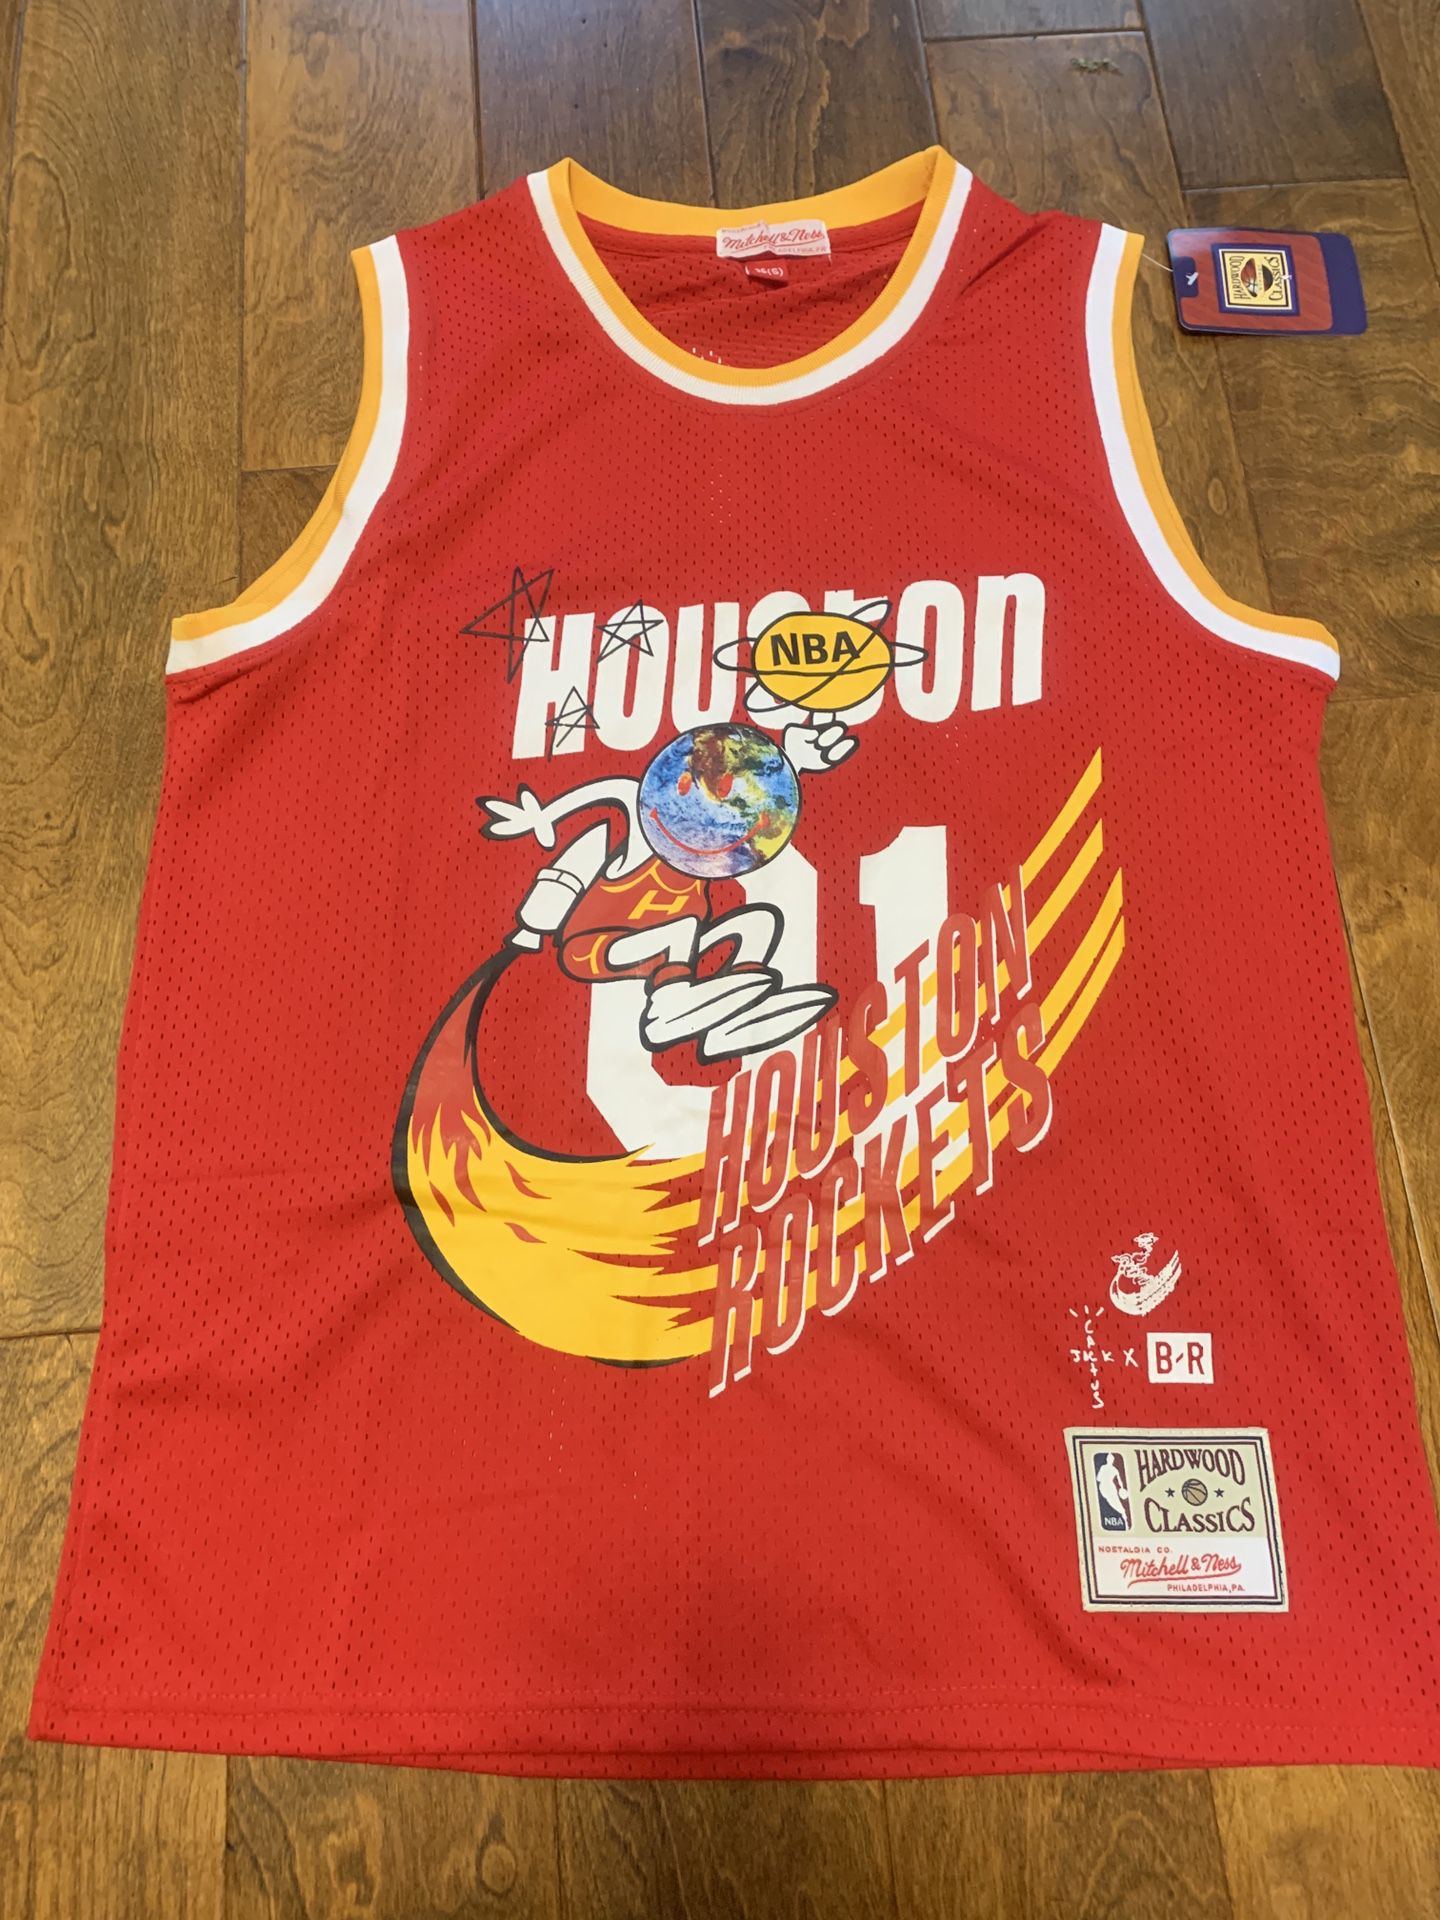 Travis Scott Houston Rockets Jersey for Sale in Bay Shore, NY